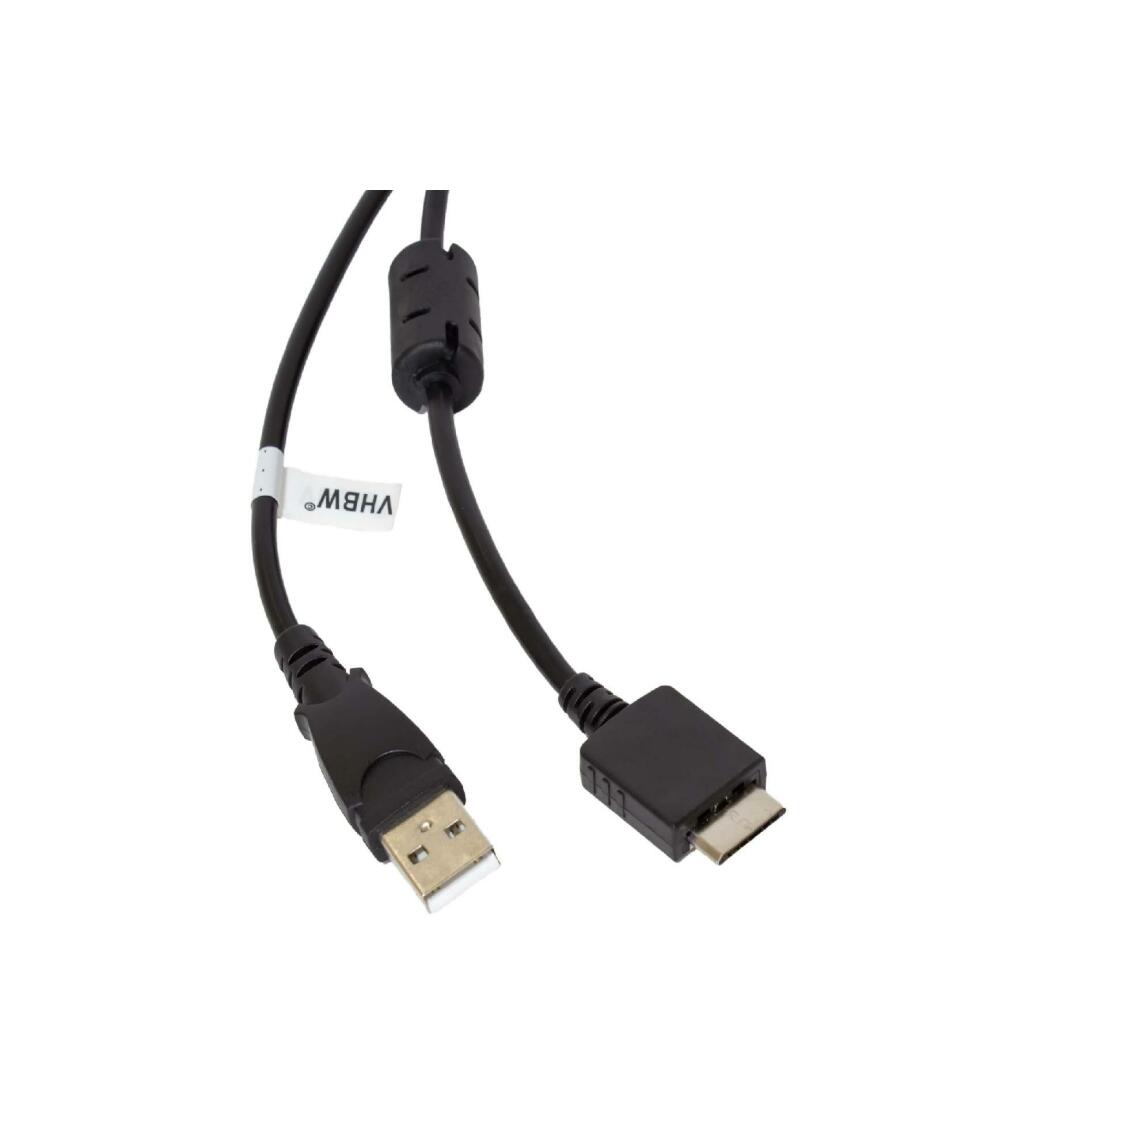 Vhbw - vhbw câble de données USB (type A sur lecteur MP3) câble de chargement compatible avec Sony Walkman NWZ-S618FBLK, NWZ-S636F lecteur MP3 - noir, 150cm - Alimentation modulaire